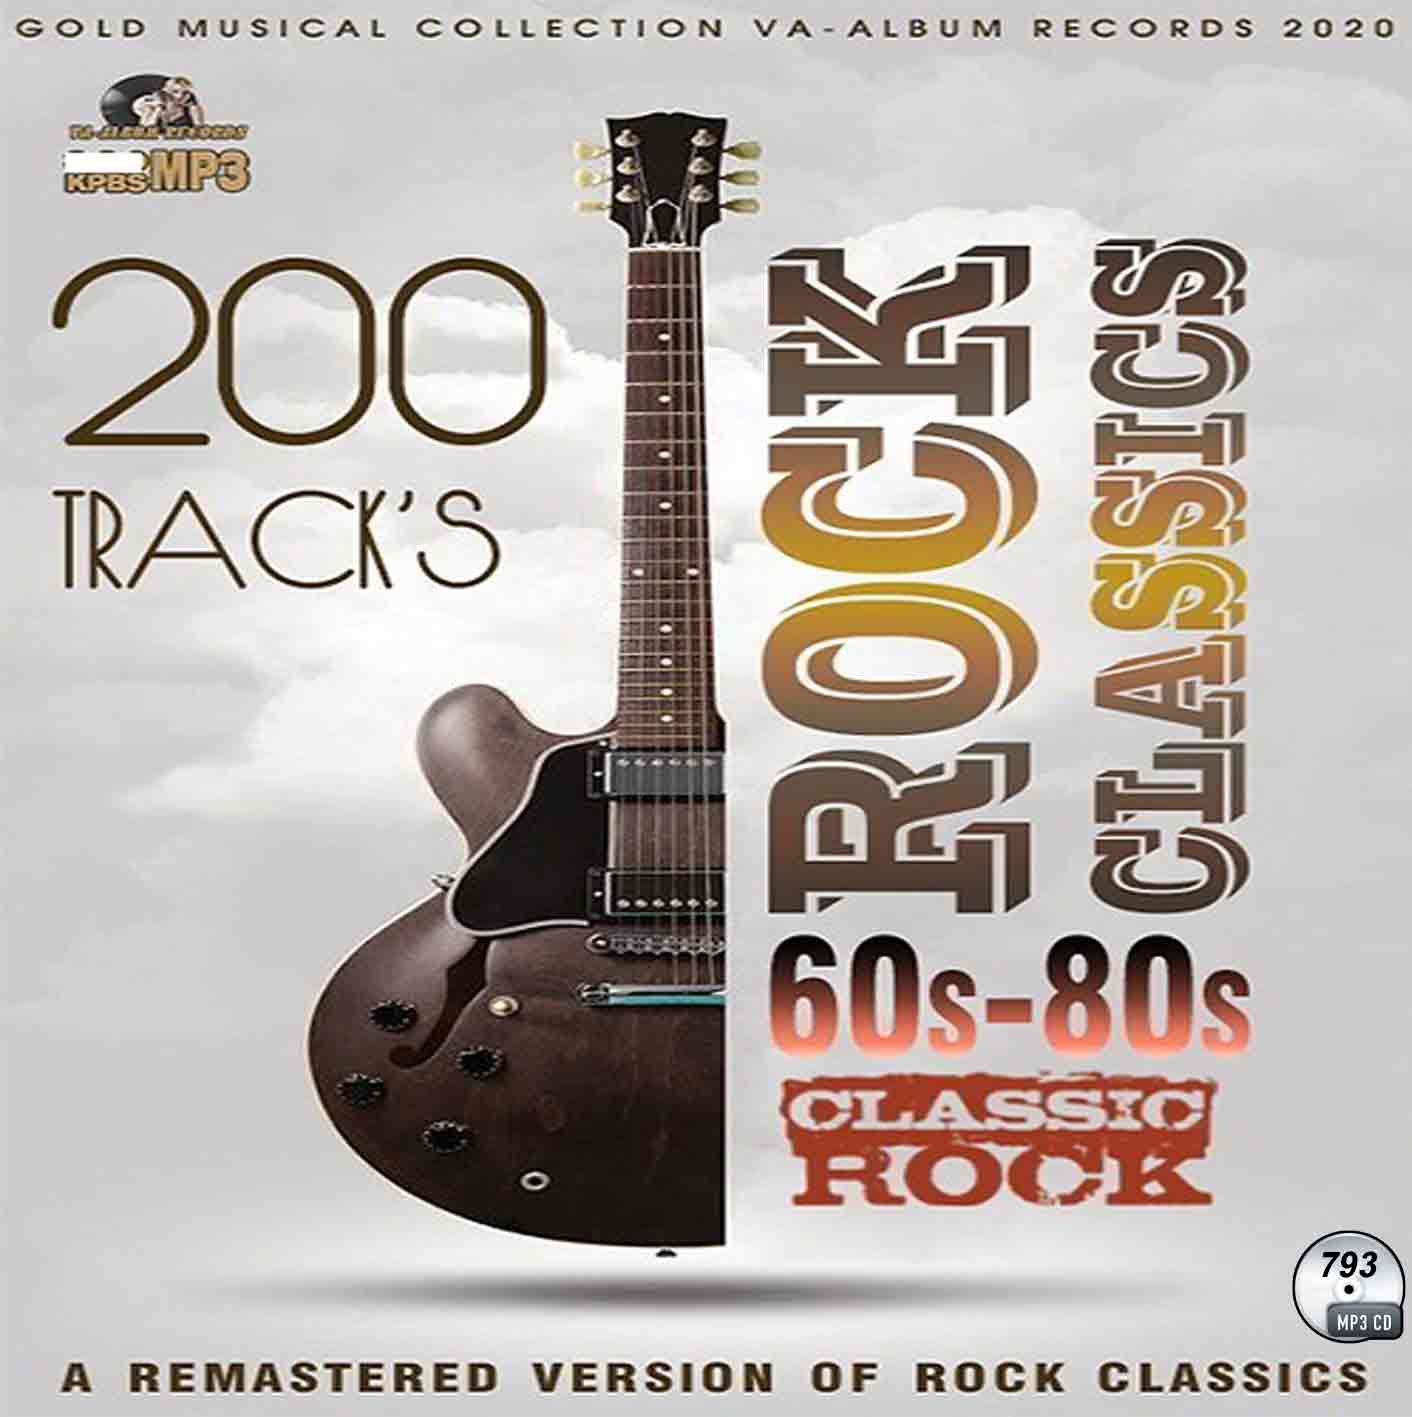 793200曲 Rock Classics 60s-80s CD souflesｈ 音楽工房